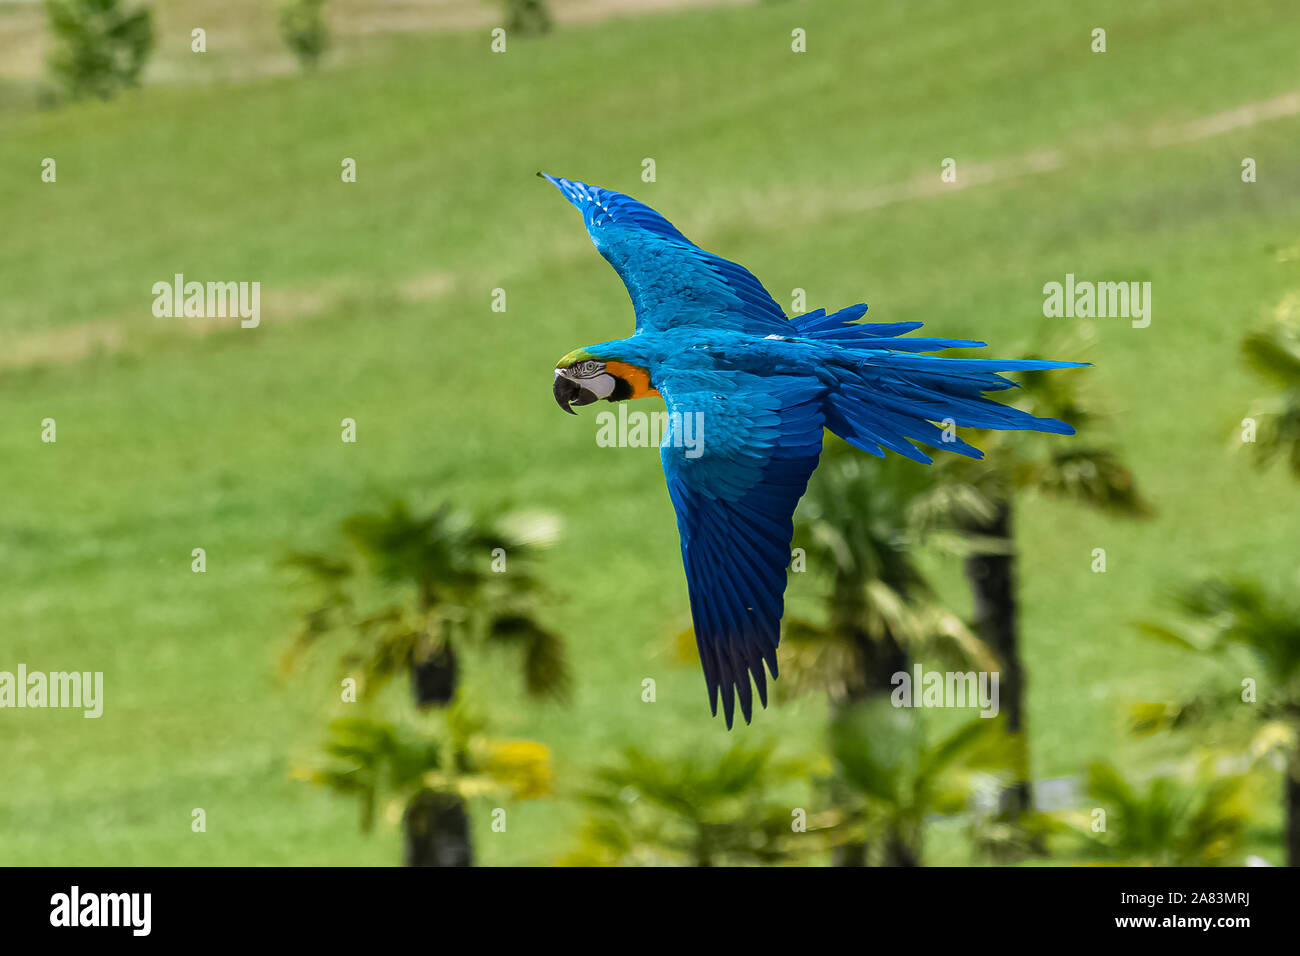 Blaue und gelbe Ara, Ara ararauna, schöne Papageien fliegen Stockfotografie  - Alamy